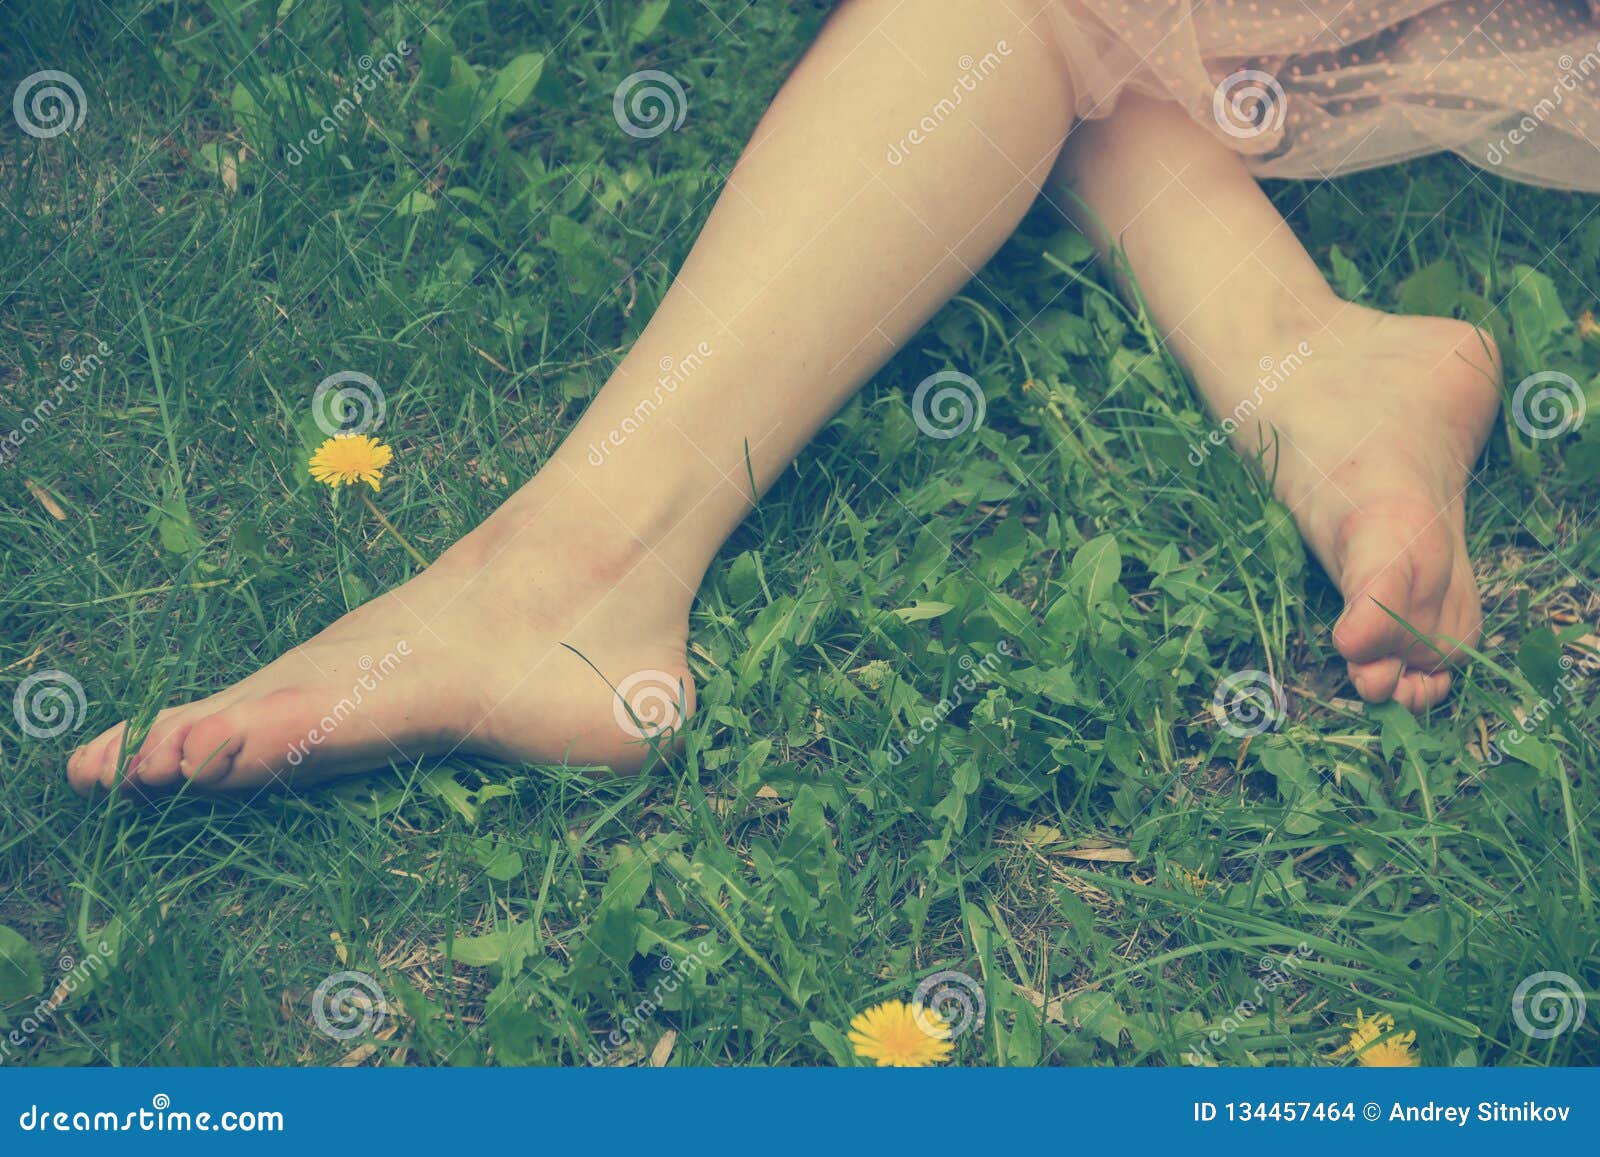 Картинка Ноги Девушки Фото